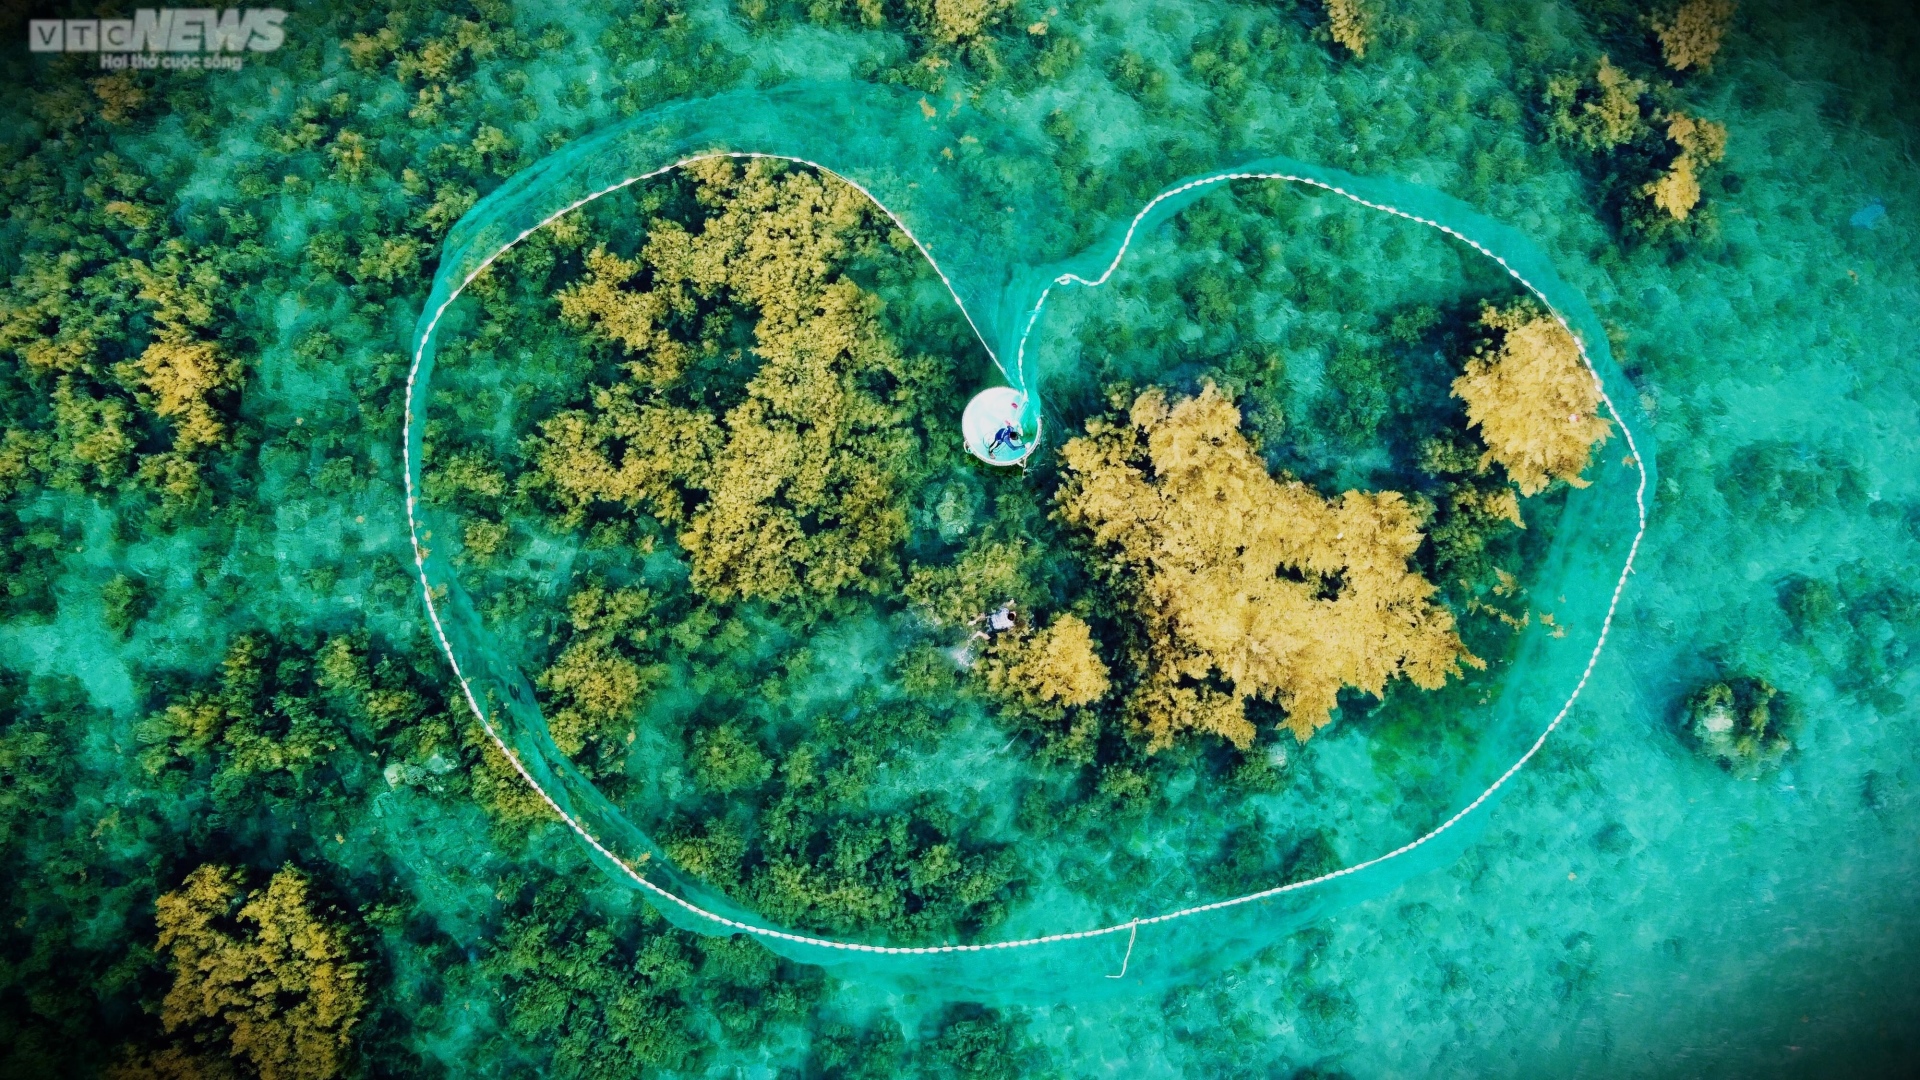 Ngất ngây 'cánh đồng vàng' dưới biển xanh trong ở đảo Hòn Khô, Bình Định - Ảnh 6.